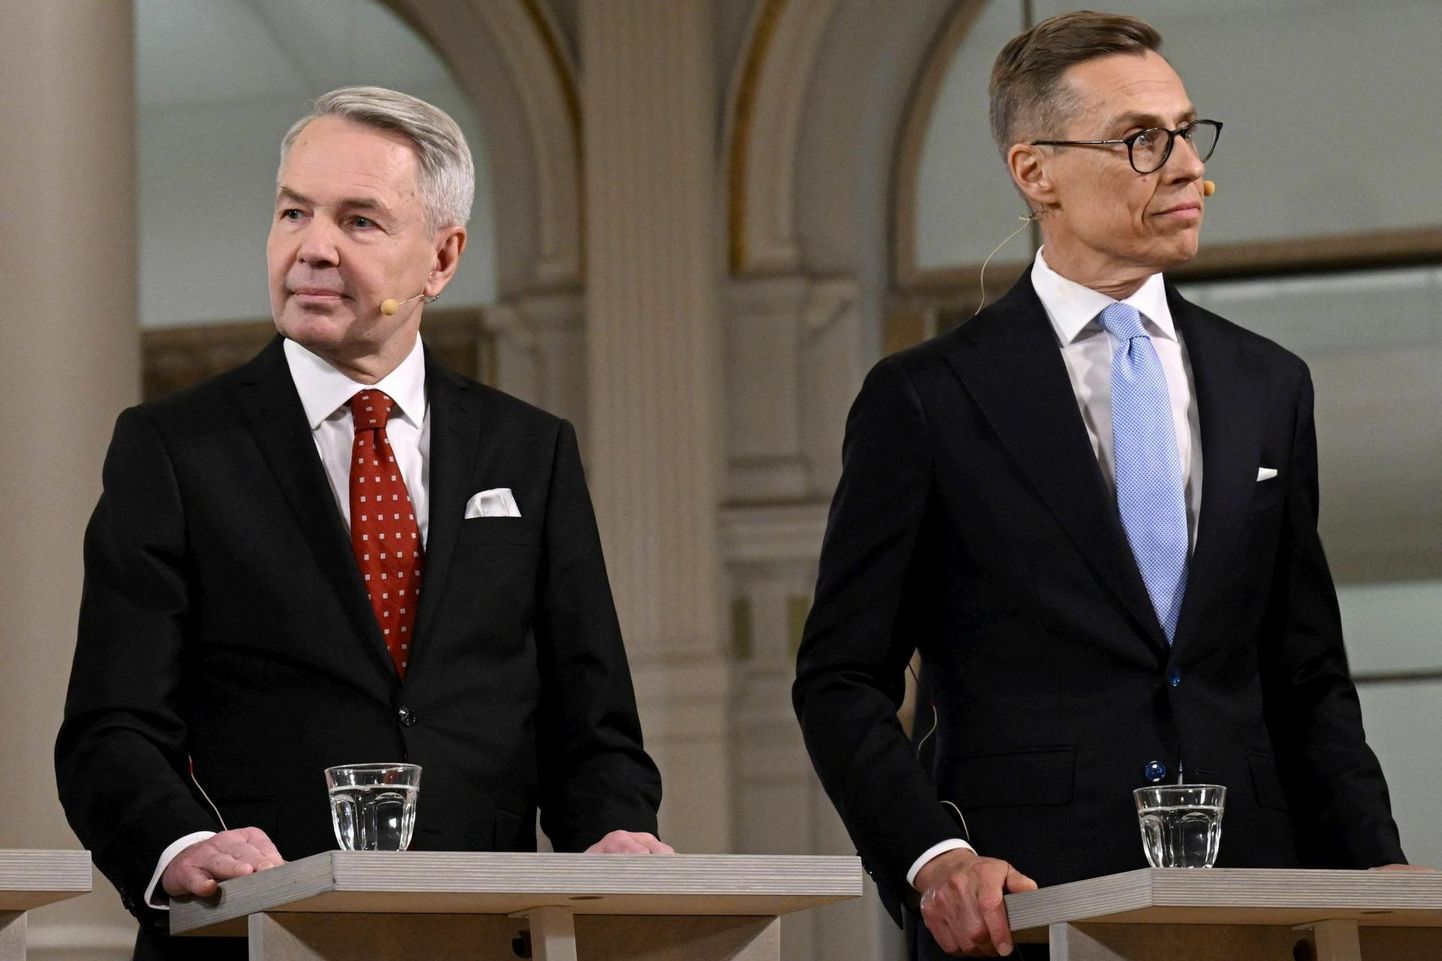 Soome presidendikandidaadid Pekka Haavisto (vasakul) ja Alexander Stubb (paremal) 28. jaanuaril Helsingi linnavalitsuse hoones, kui selgusid lõppvooru pääsenute nimed.